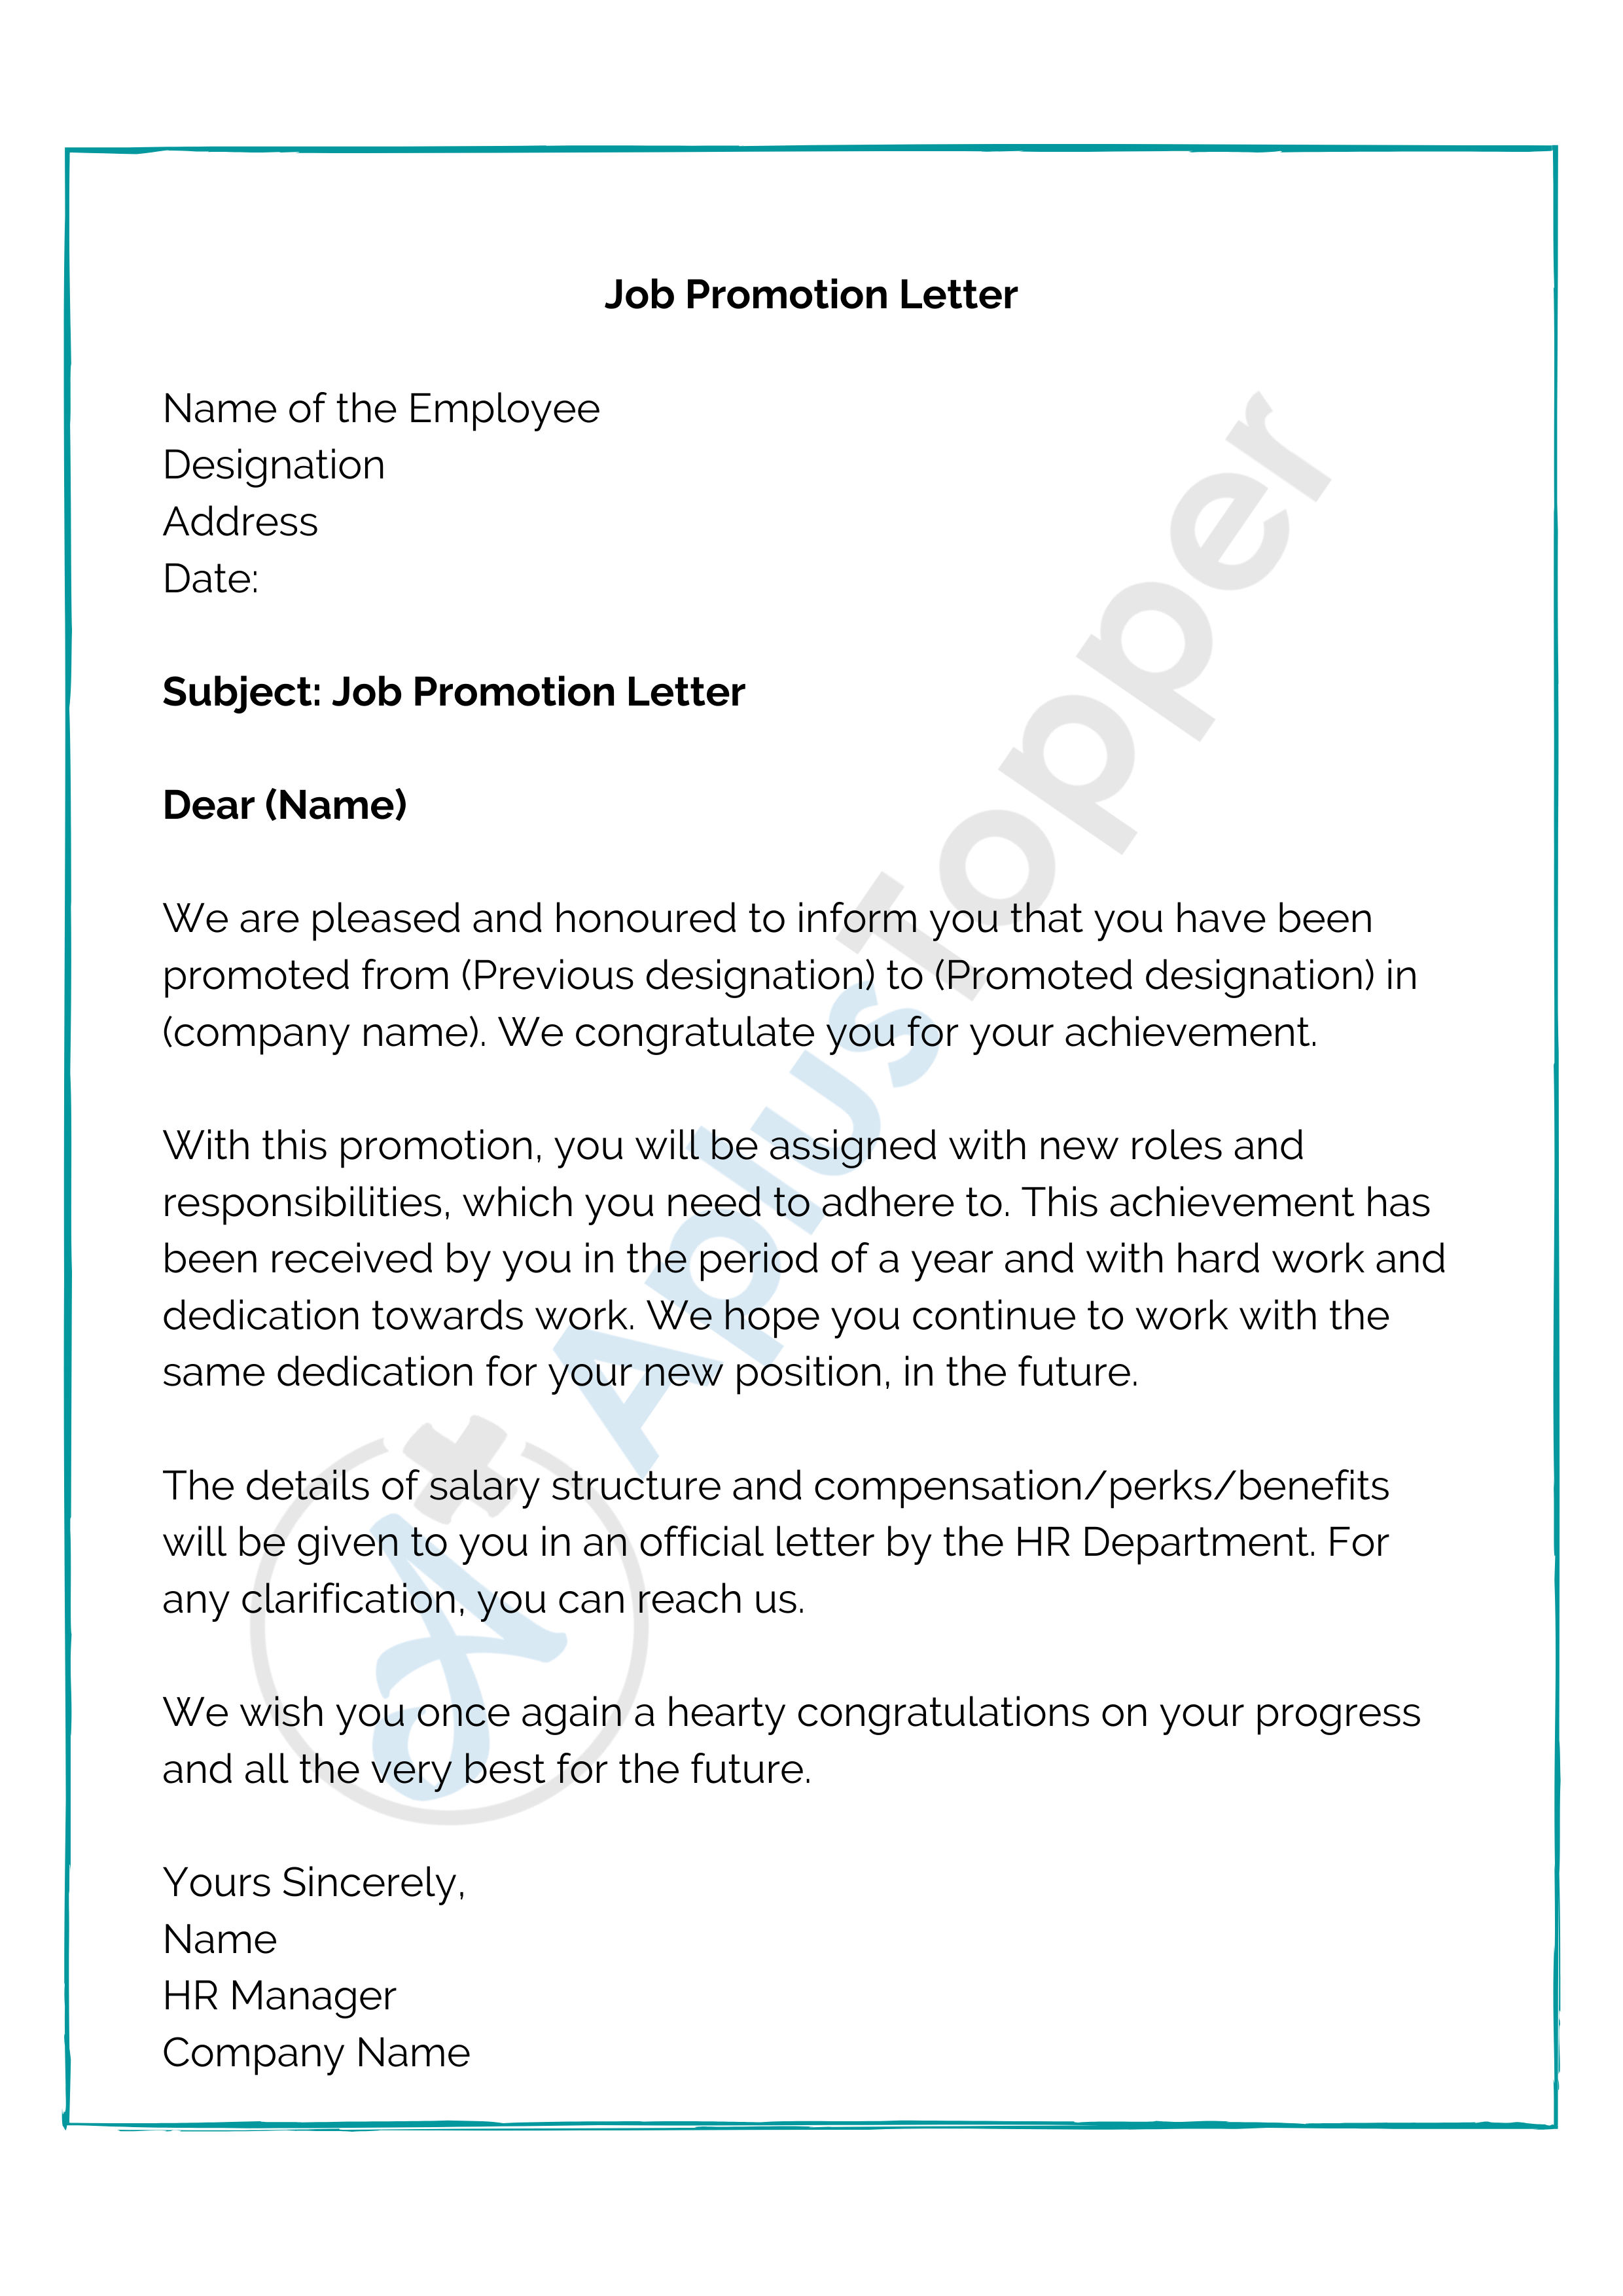 Job Promotion Letter